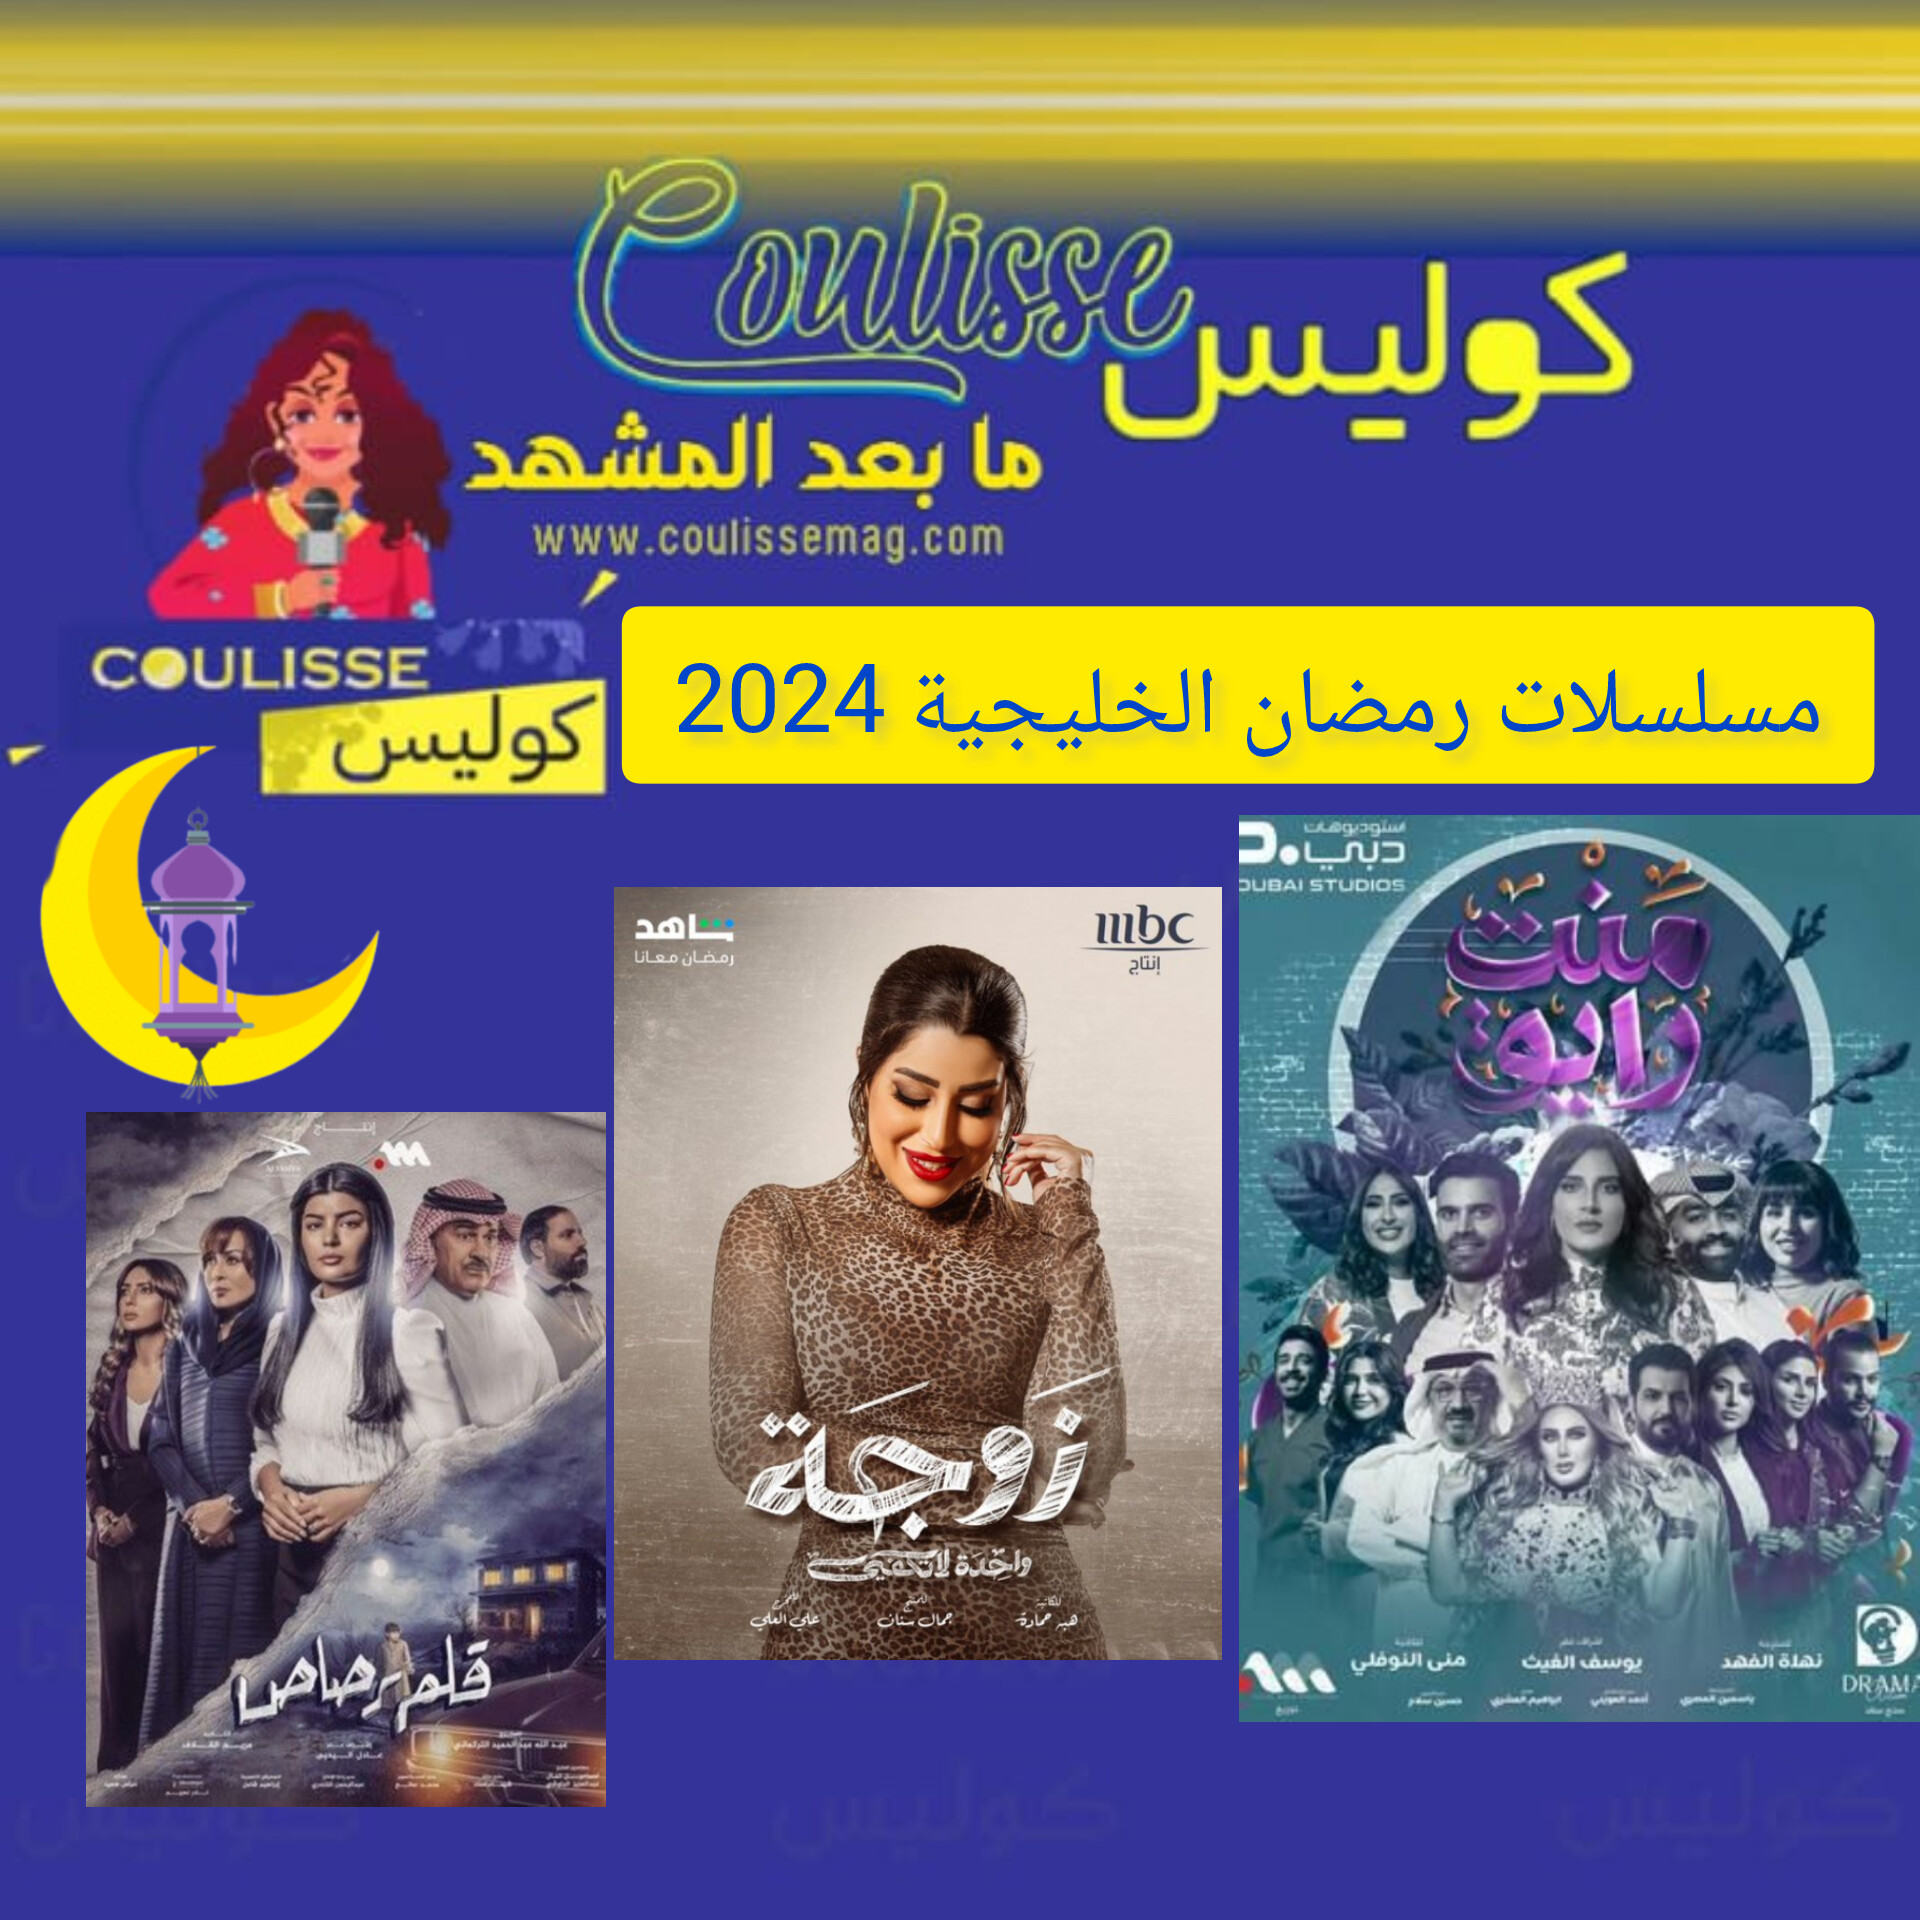 رمضان 2024: الدراما الخليجية بمزيج فني متنوع! – صور